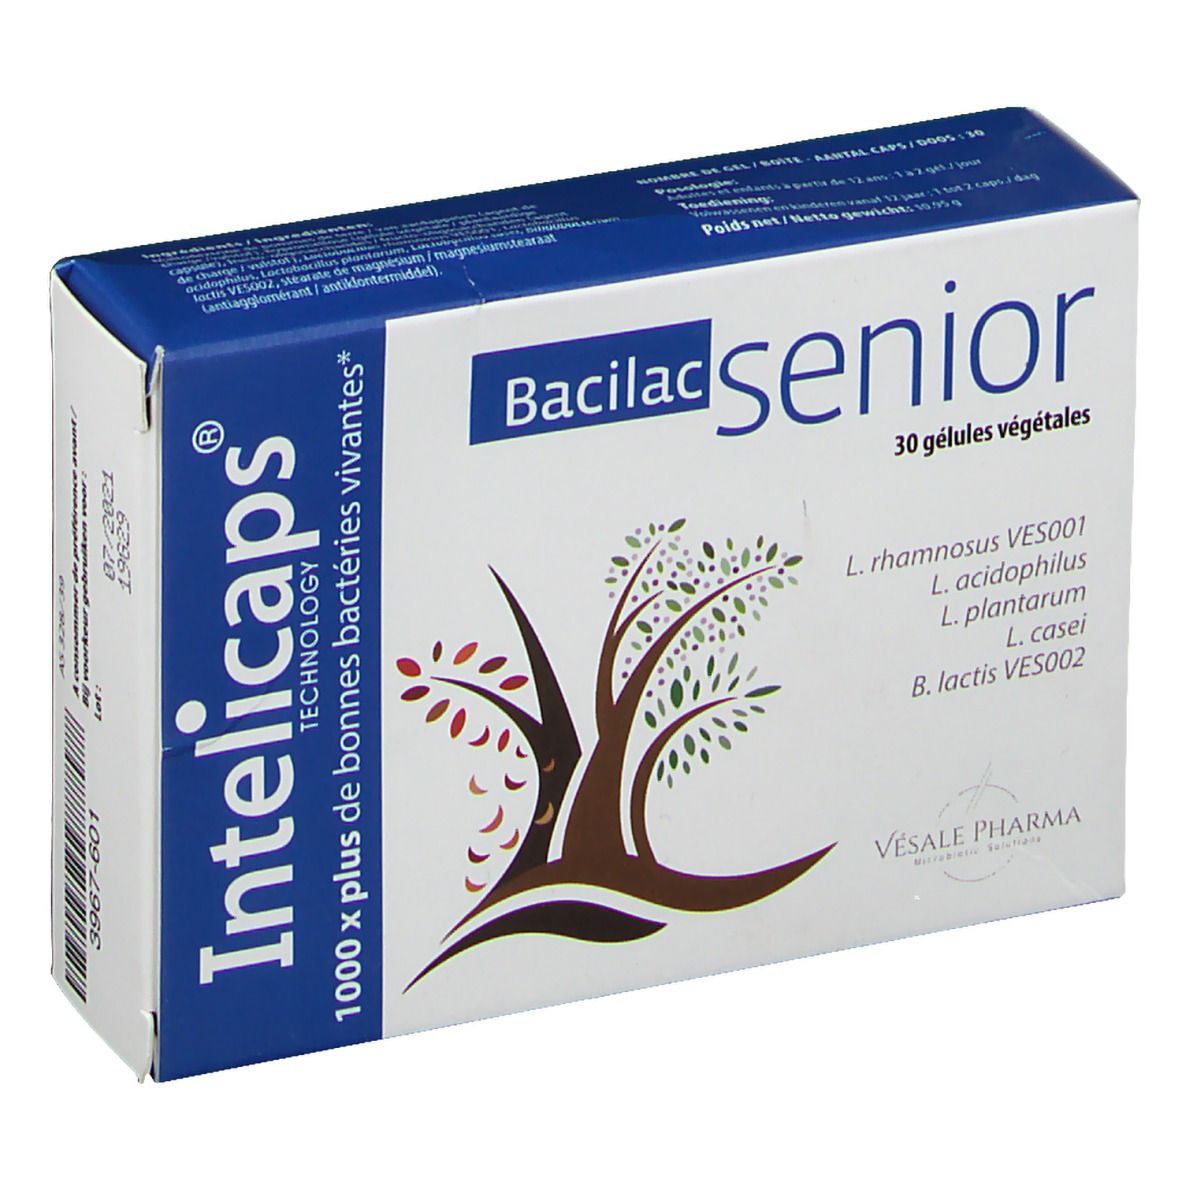 Bacilac Senior Intelicaps®